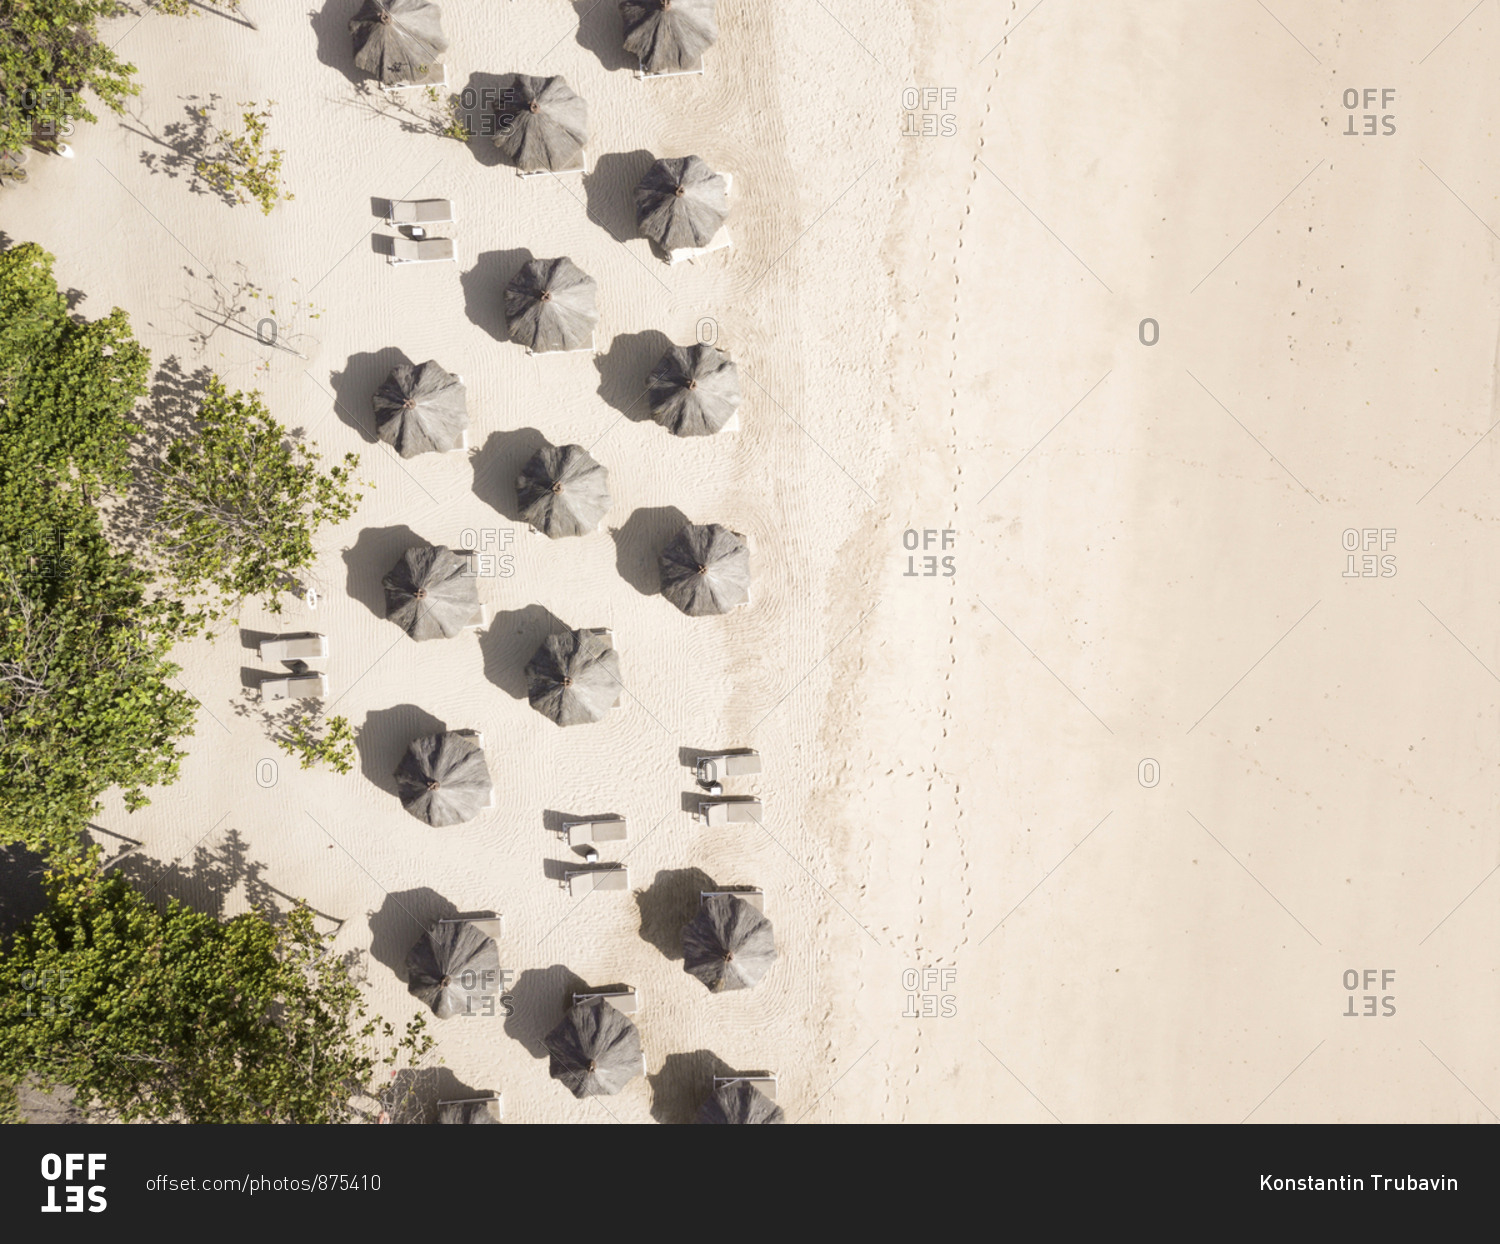 Aerial  view of sun umbrellas,Nusa Dua, Bali, Indonesia